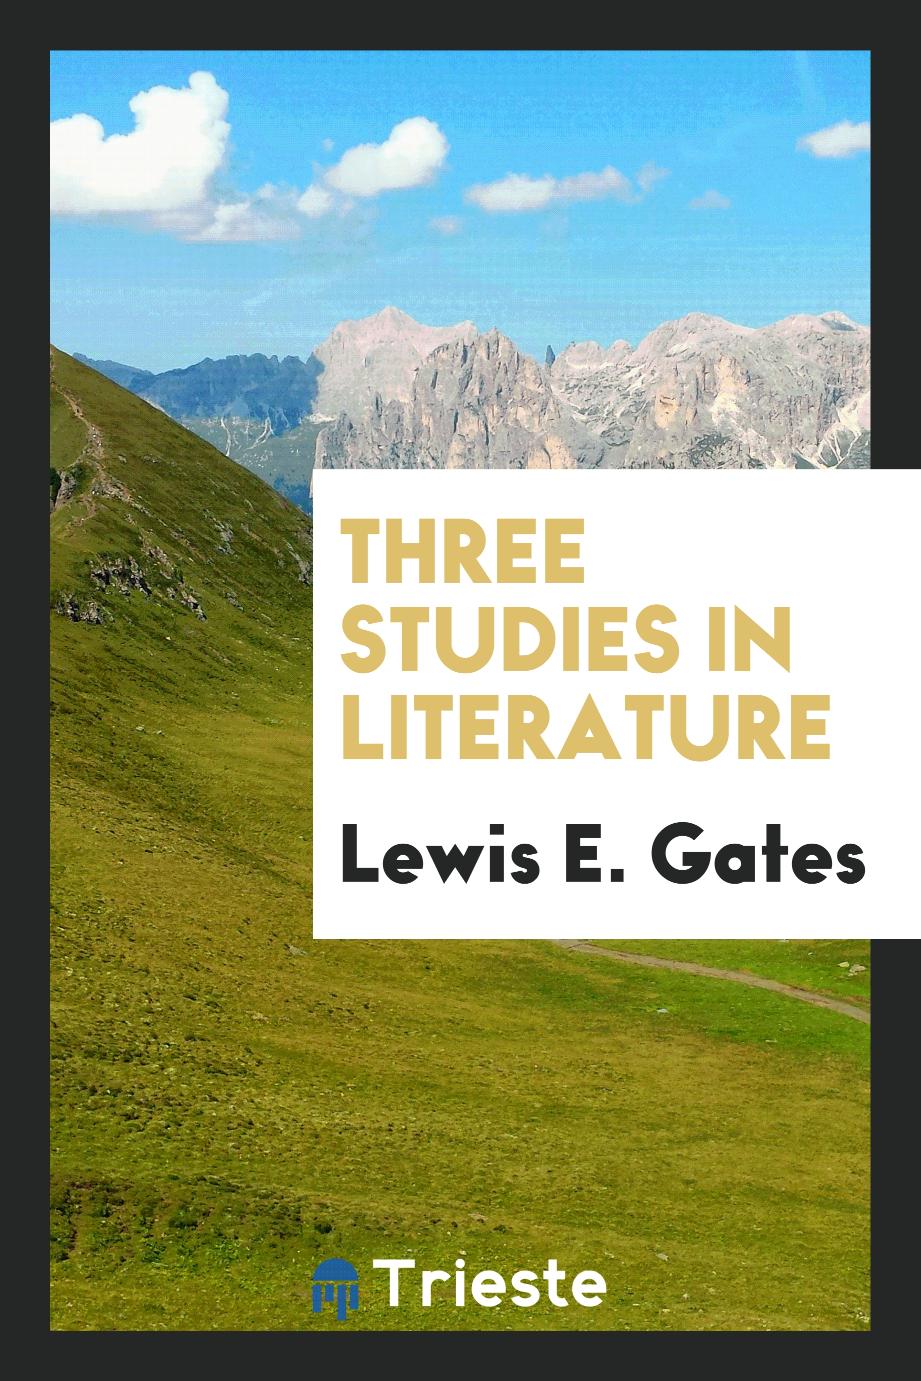 Three studies in literature